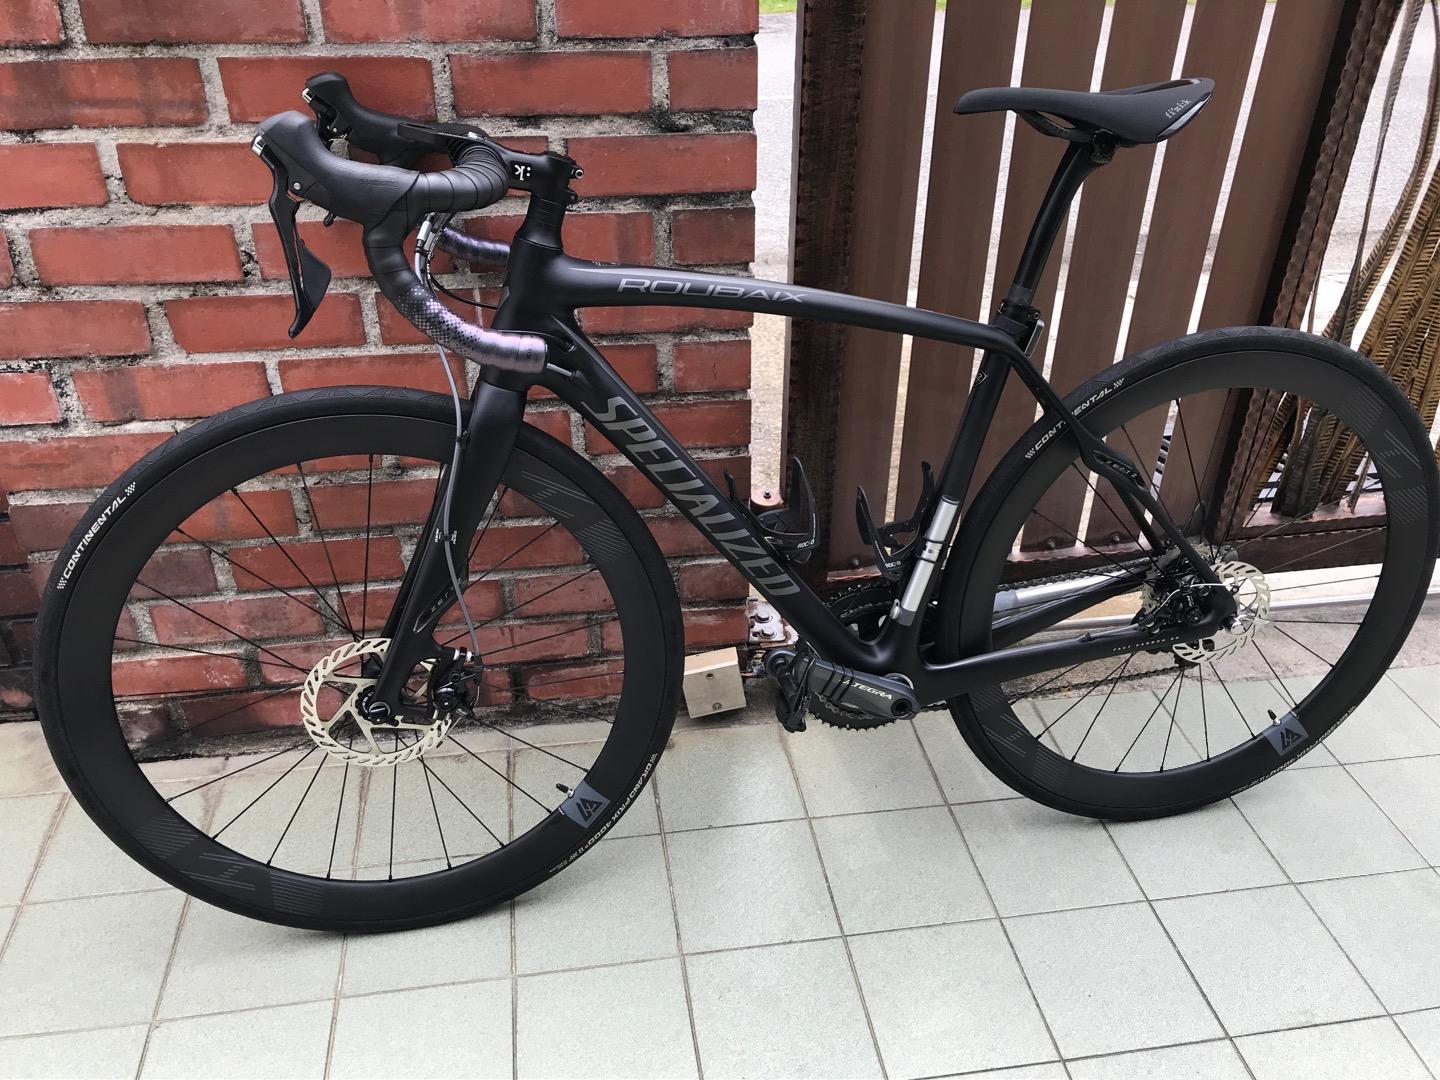 specialized roubaix carbon fiber road bike